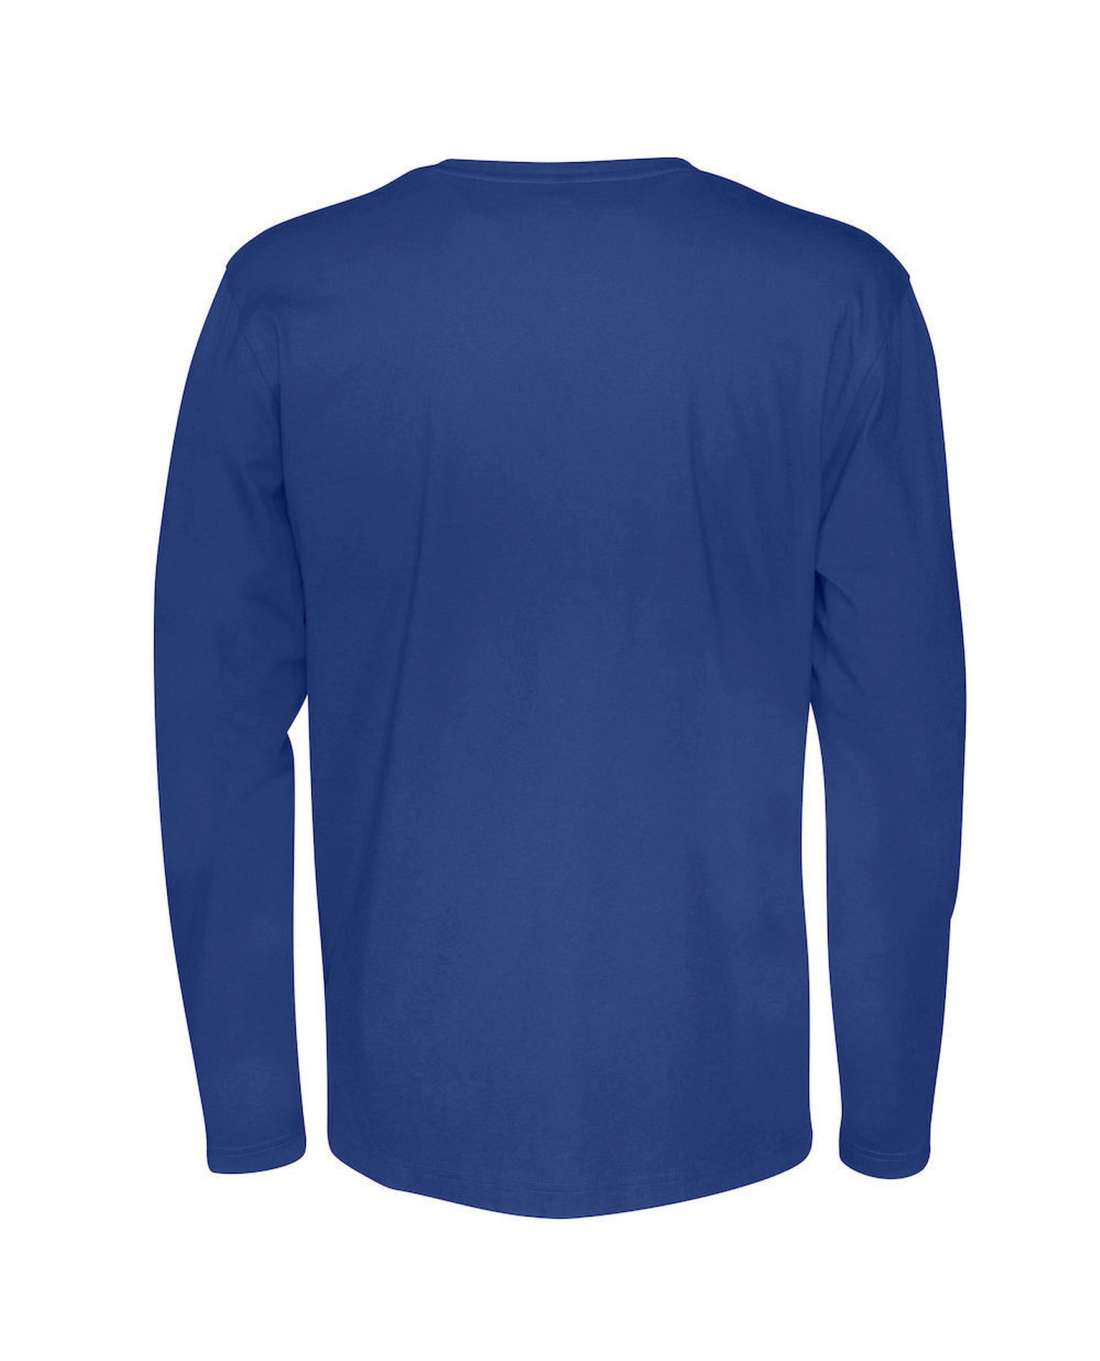 Cottover Miesten pitkähihainen T-paita, Sininen